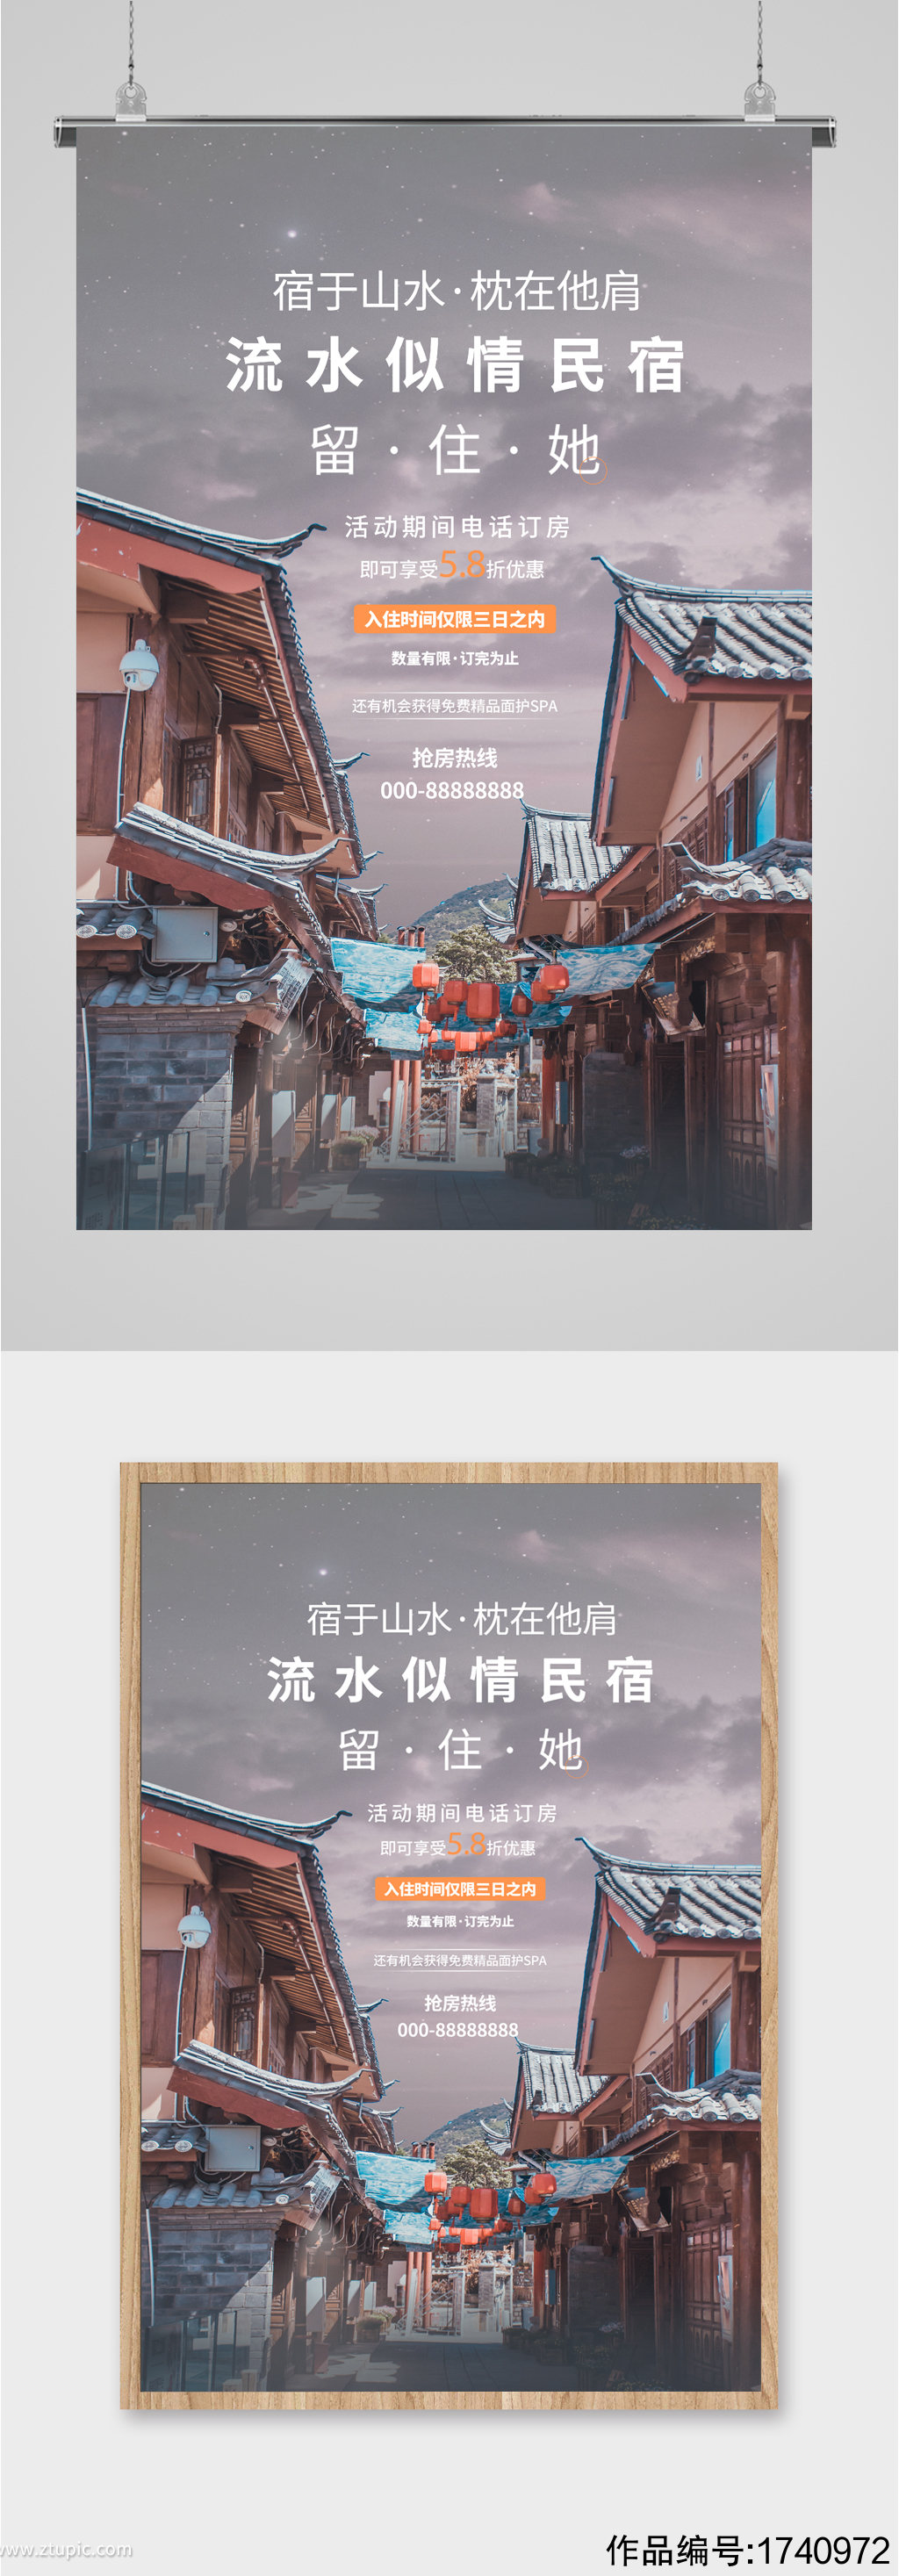 风景民宿宣传海报模板下载-编号1740972-众图网